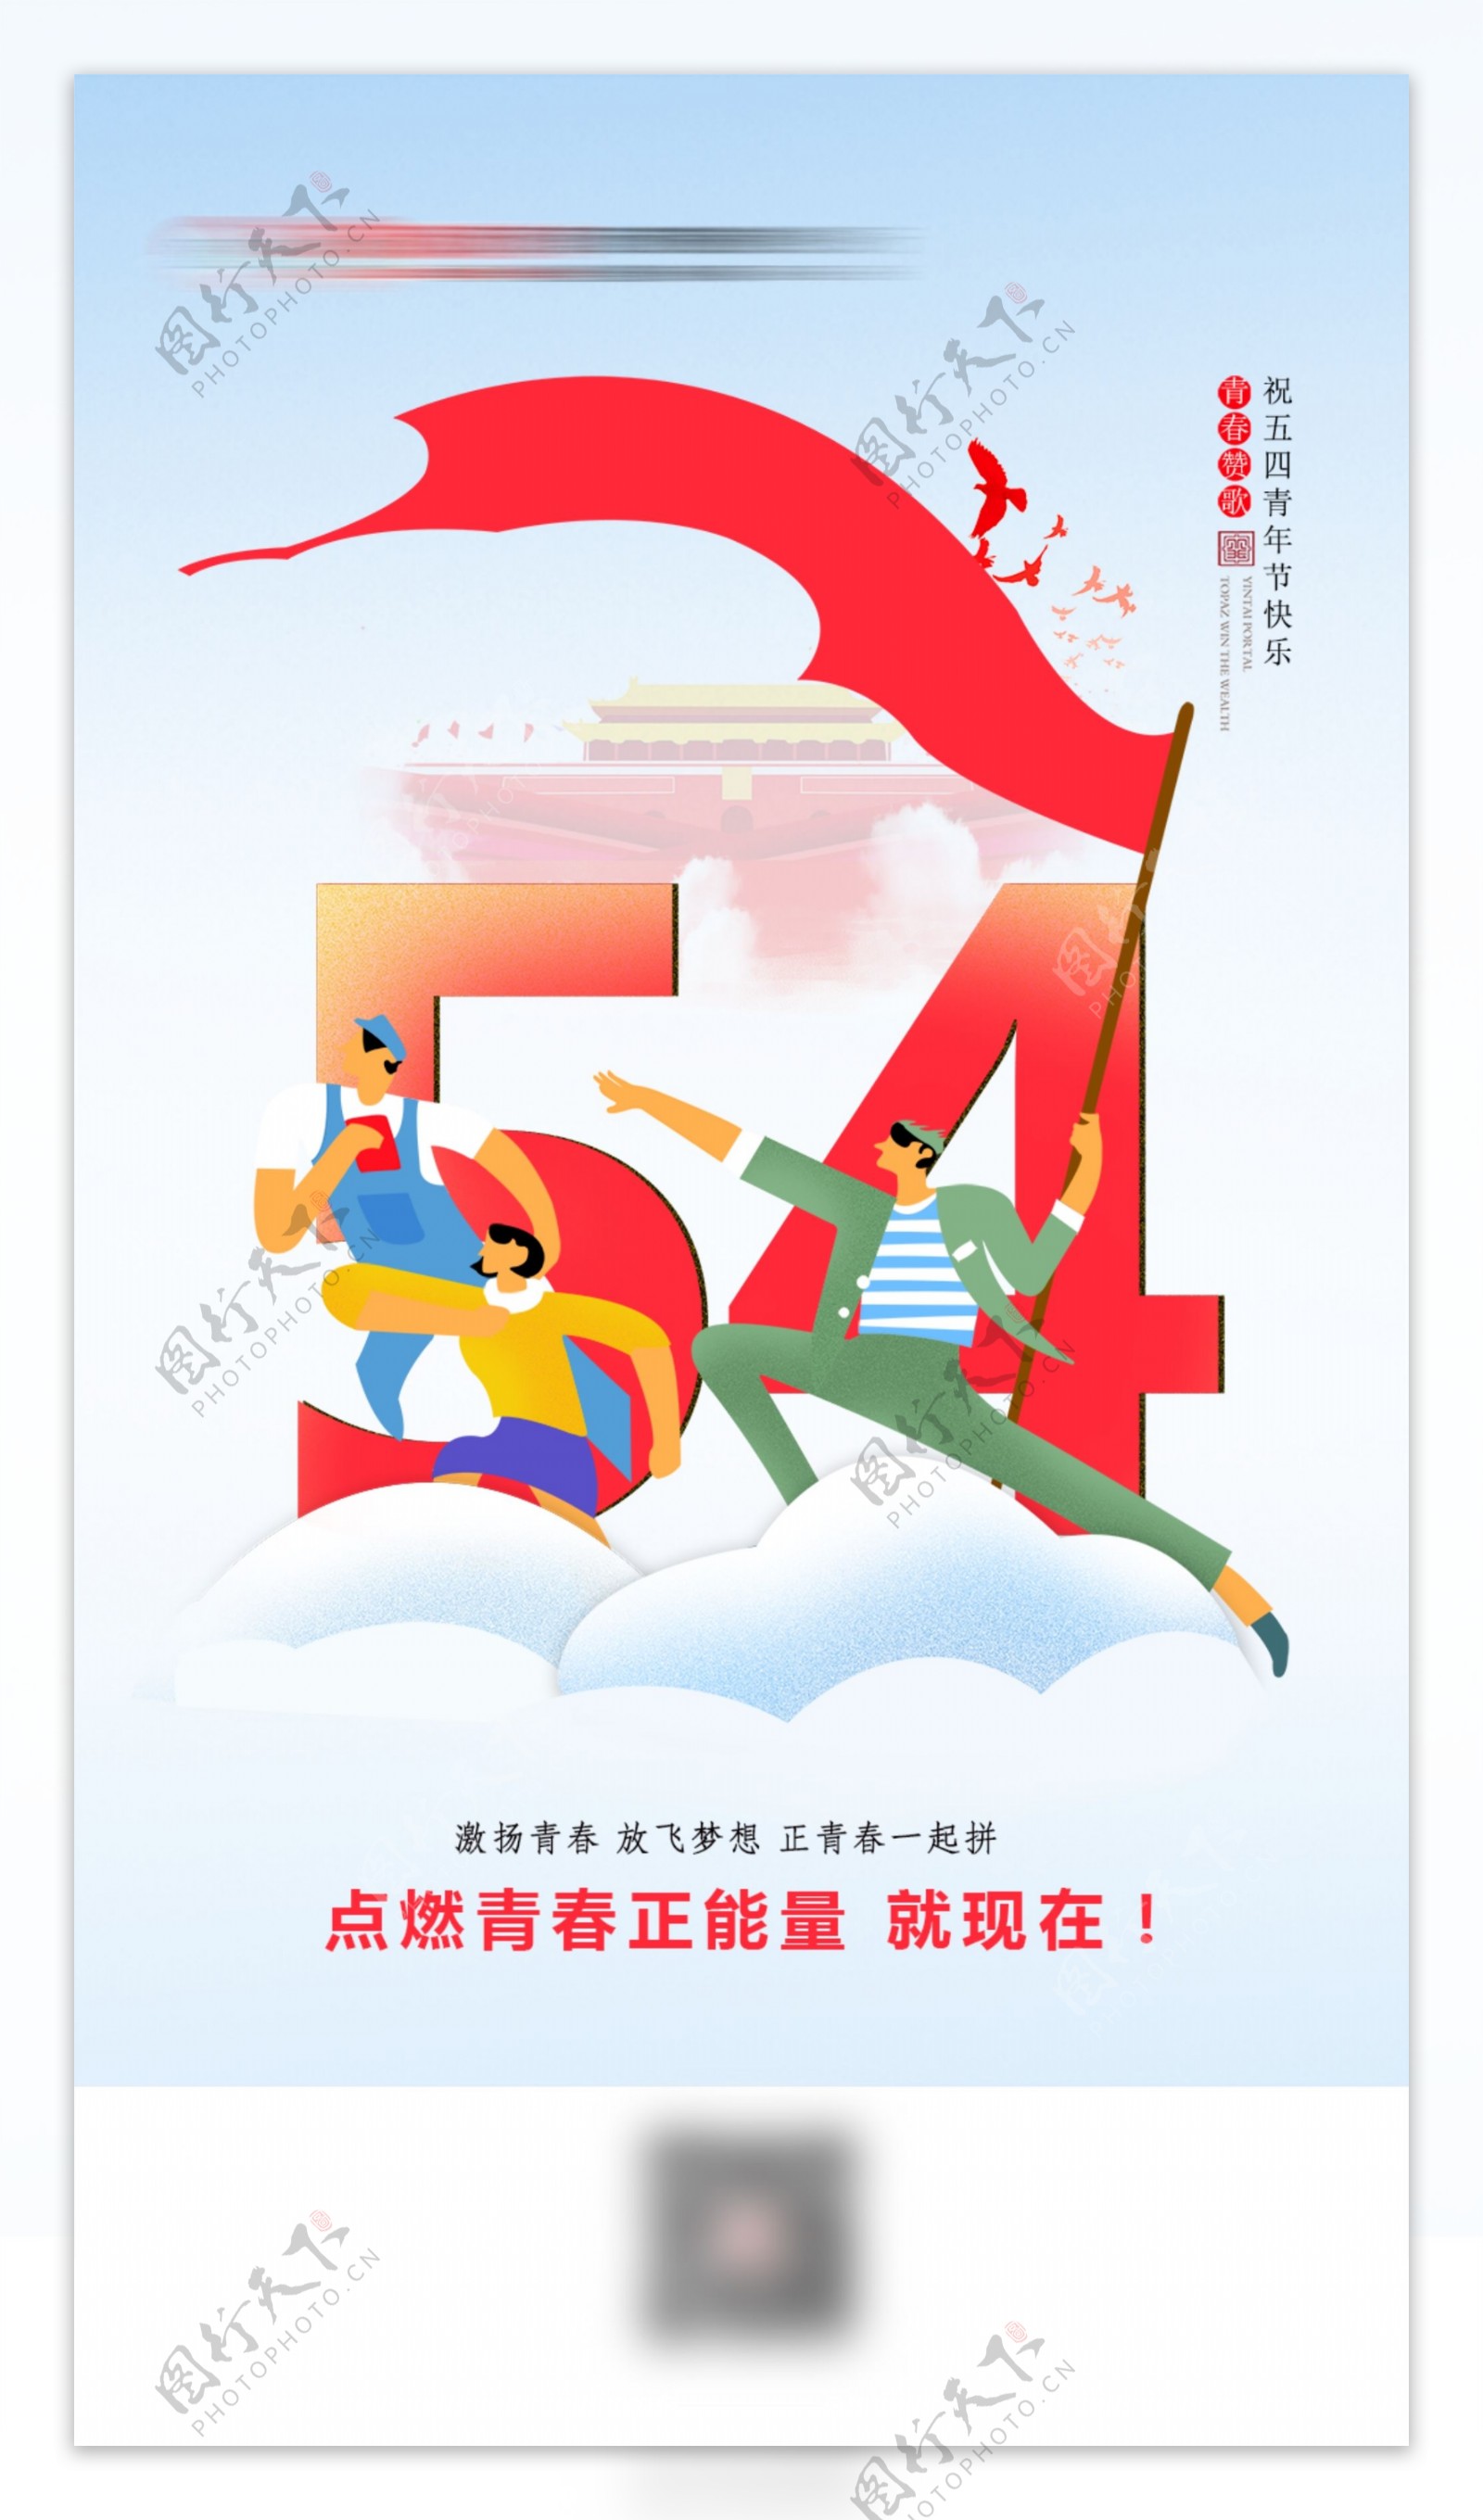 54青年节卡通节日海报